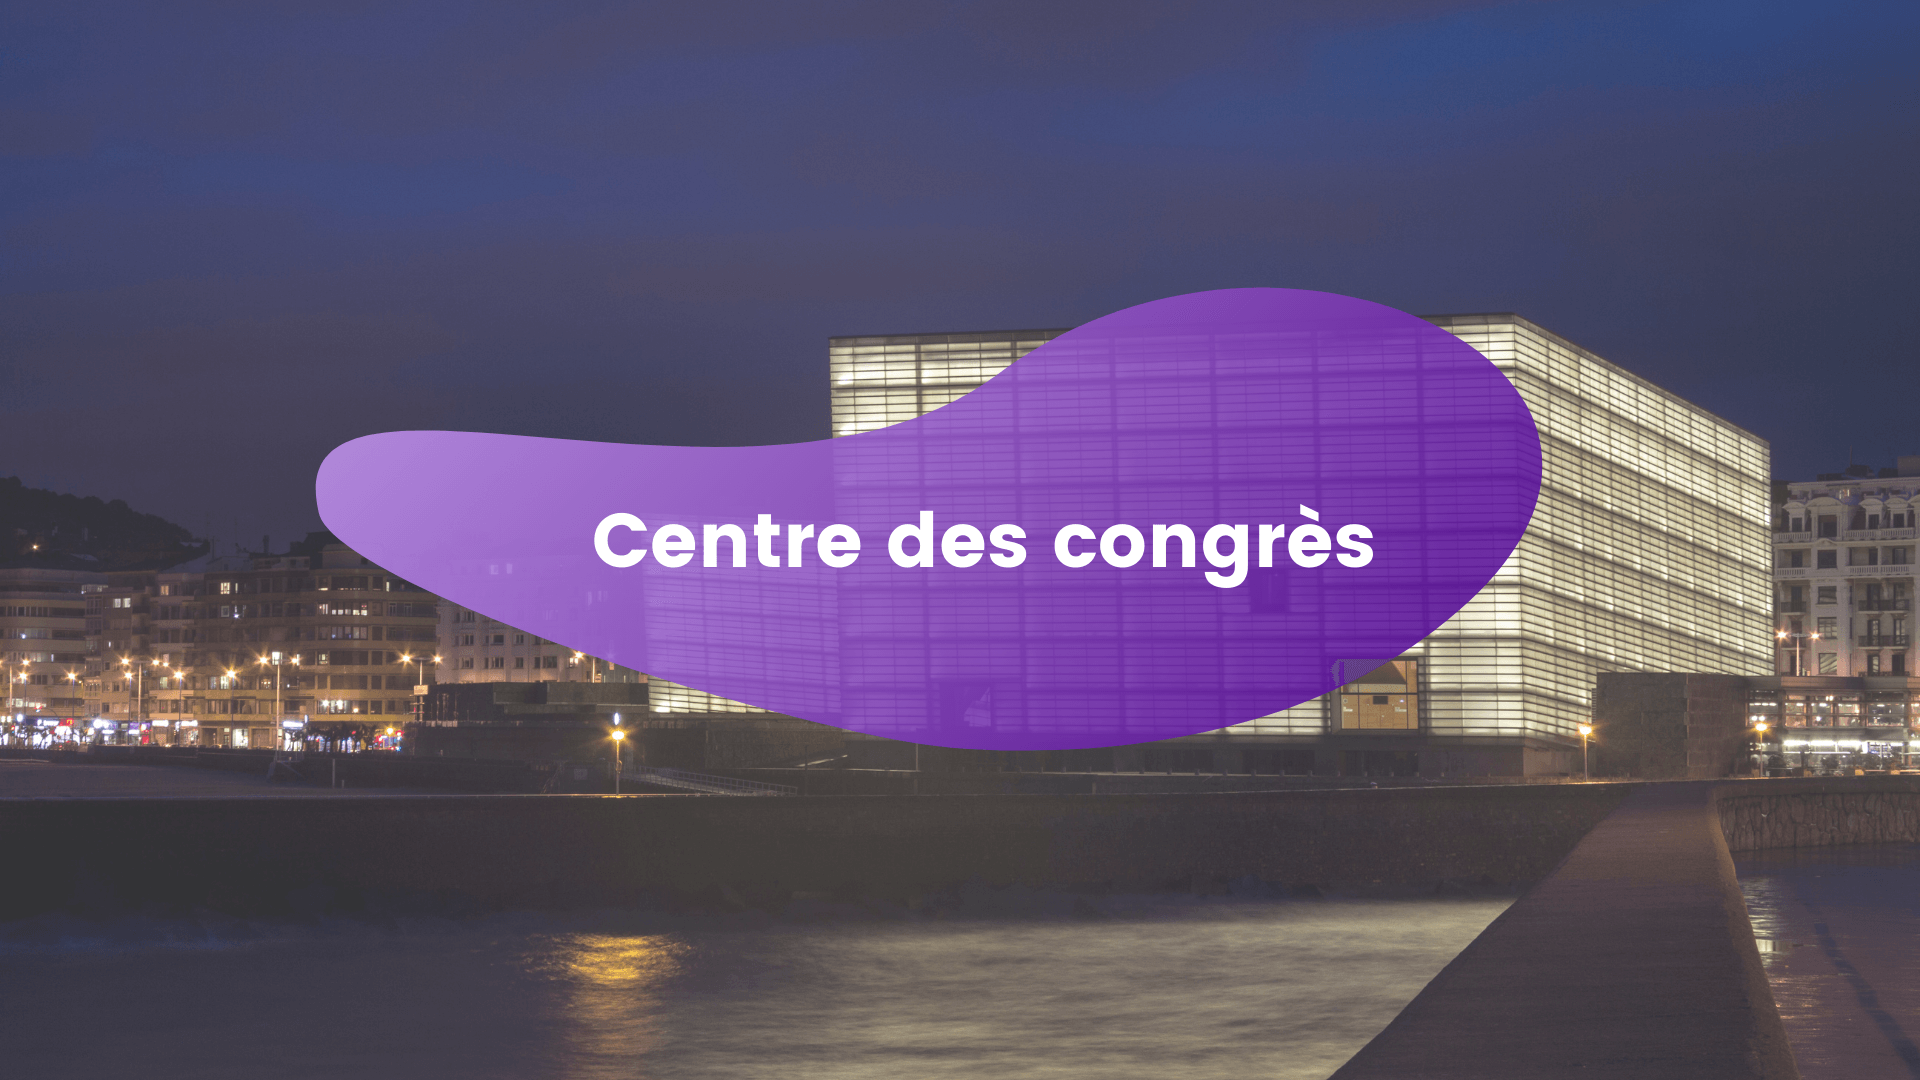 Image du centre des congrès de nuit avec une bulle violette en avant où il y a écrit 